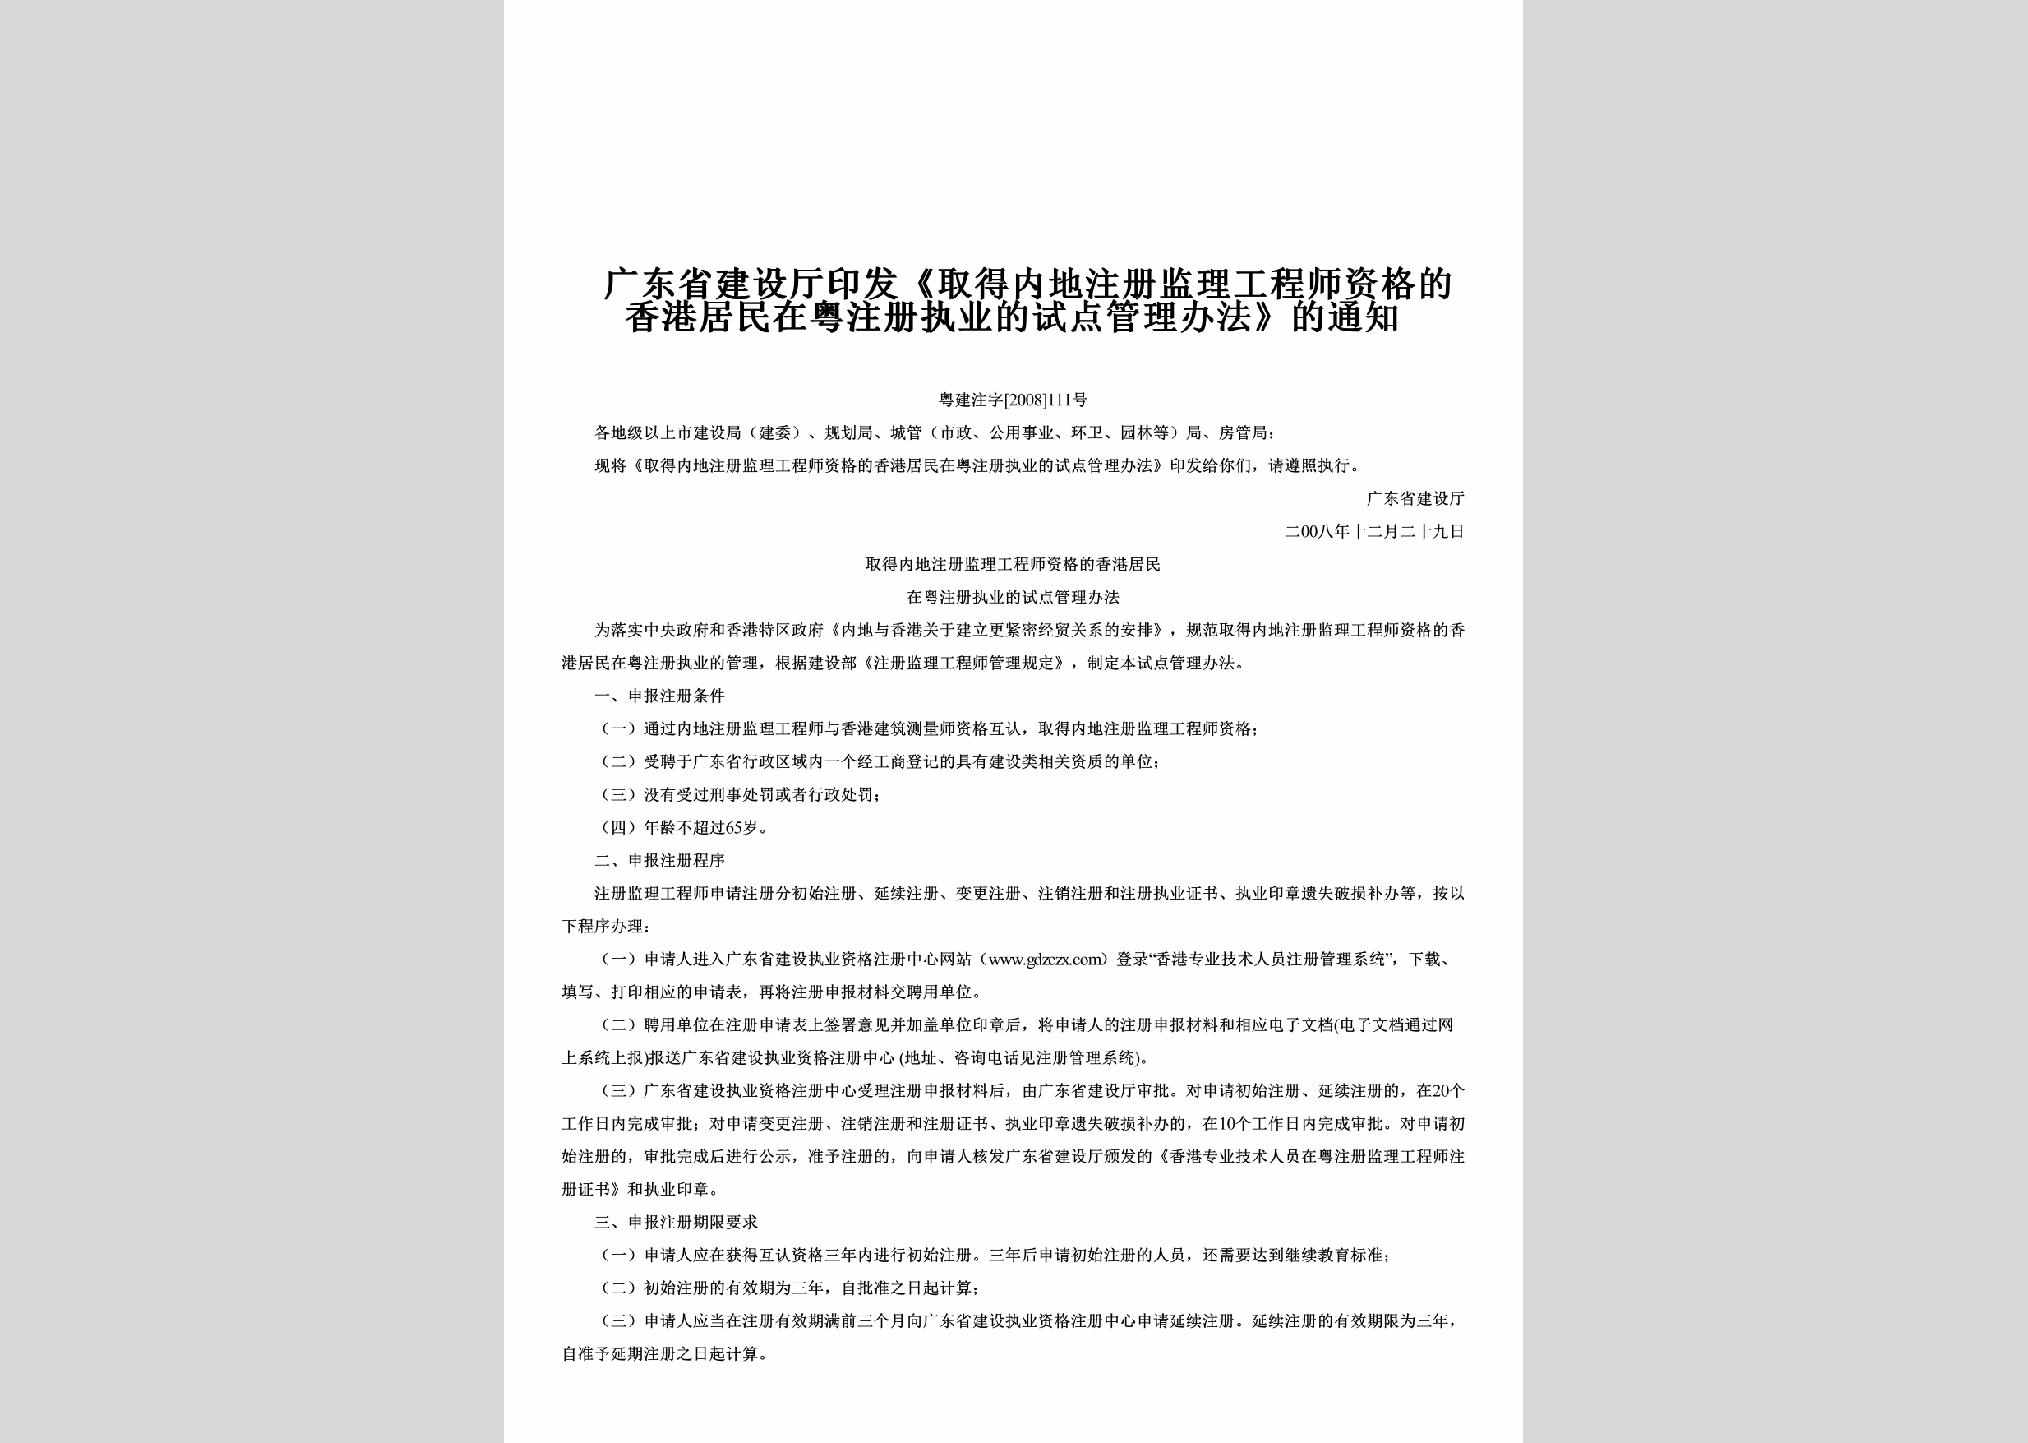 粤建注字[2008]111号：印发《取得内地注册监理工程师资格的香港居民在粤注册执业的试点管理办法》的通知